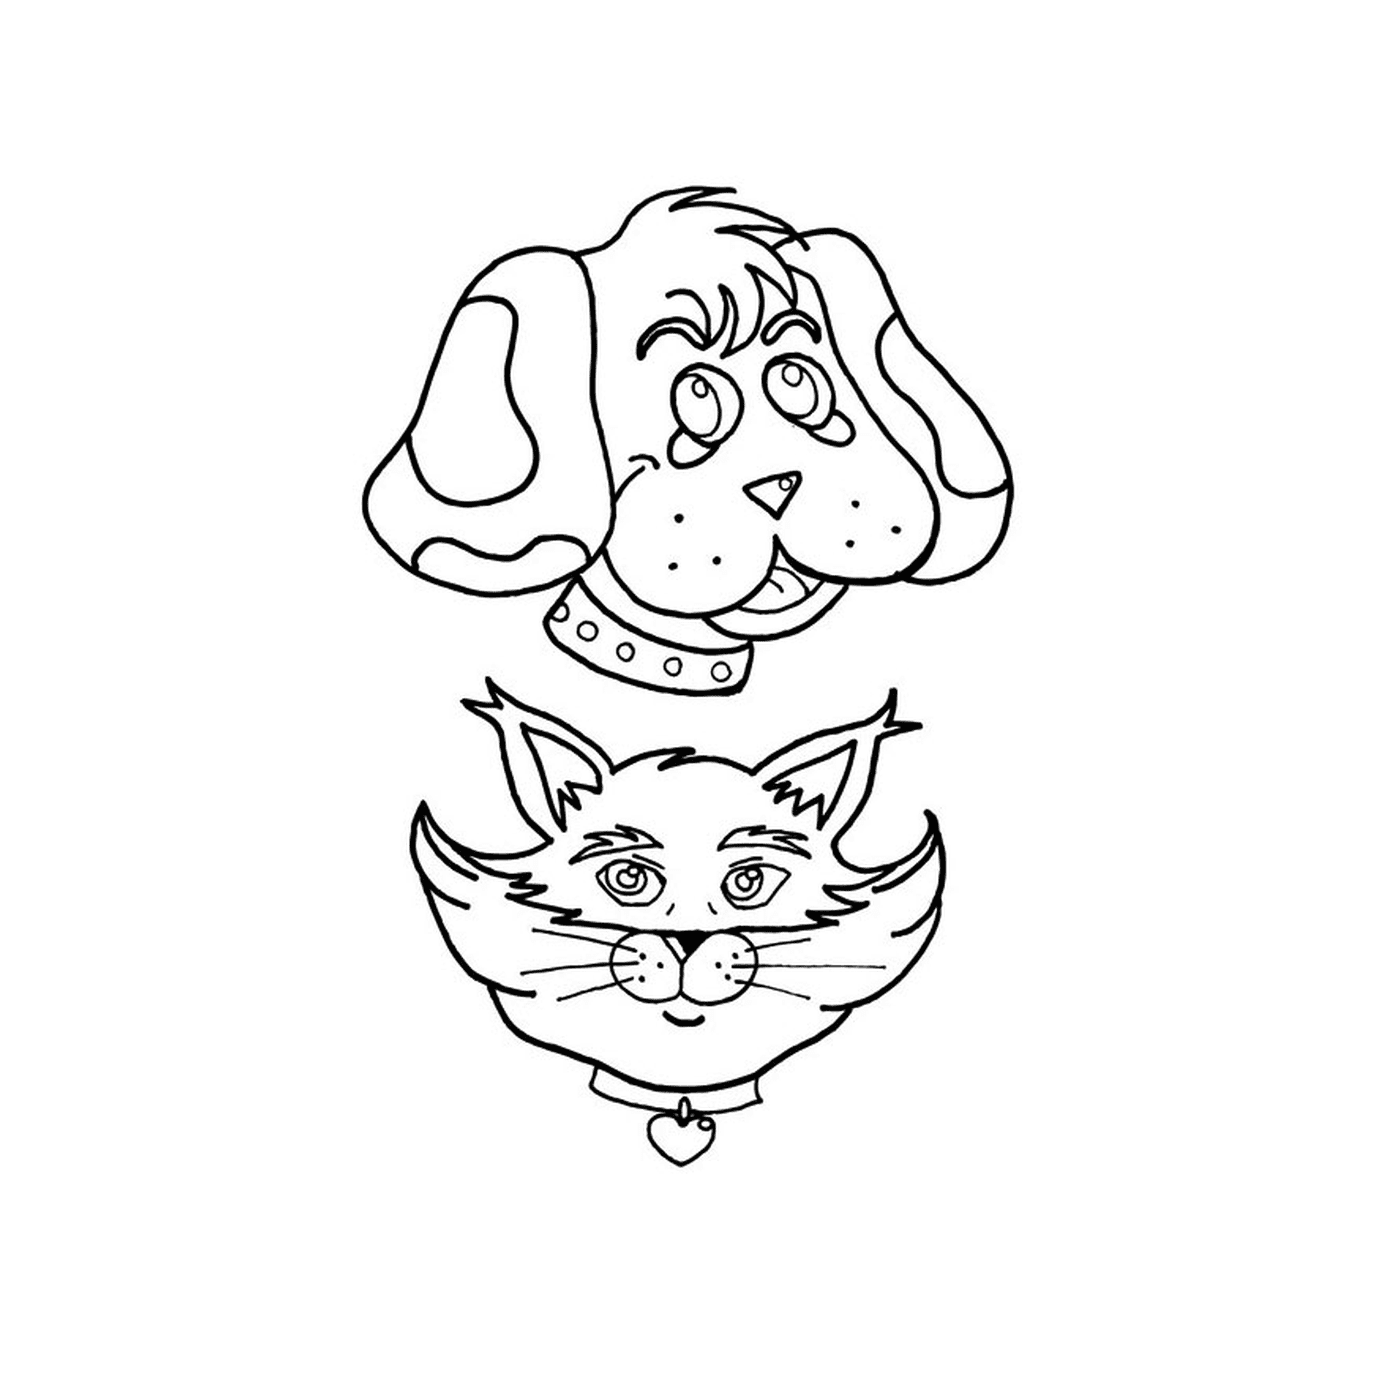  Un cane e un gatto disegnati insieme 